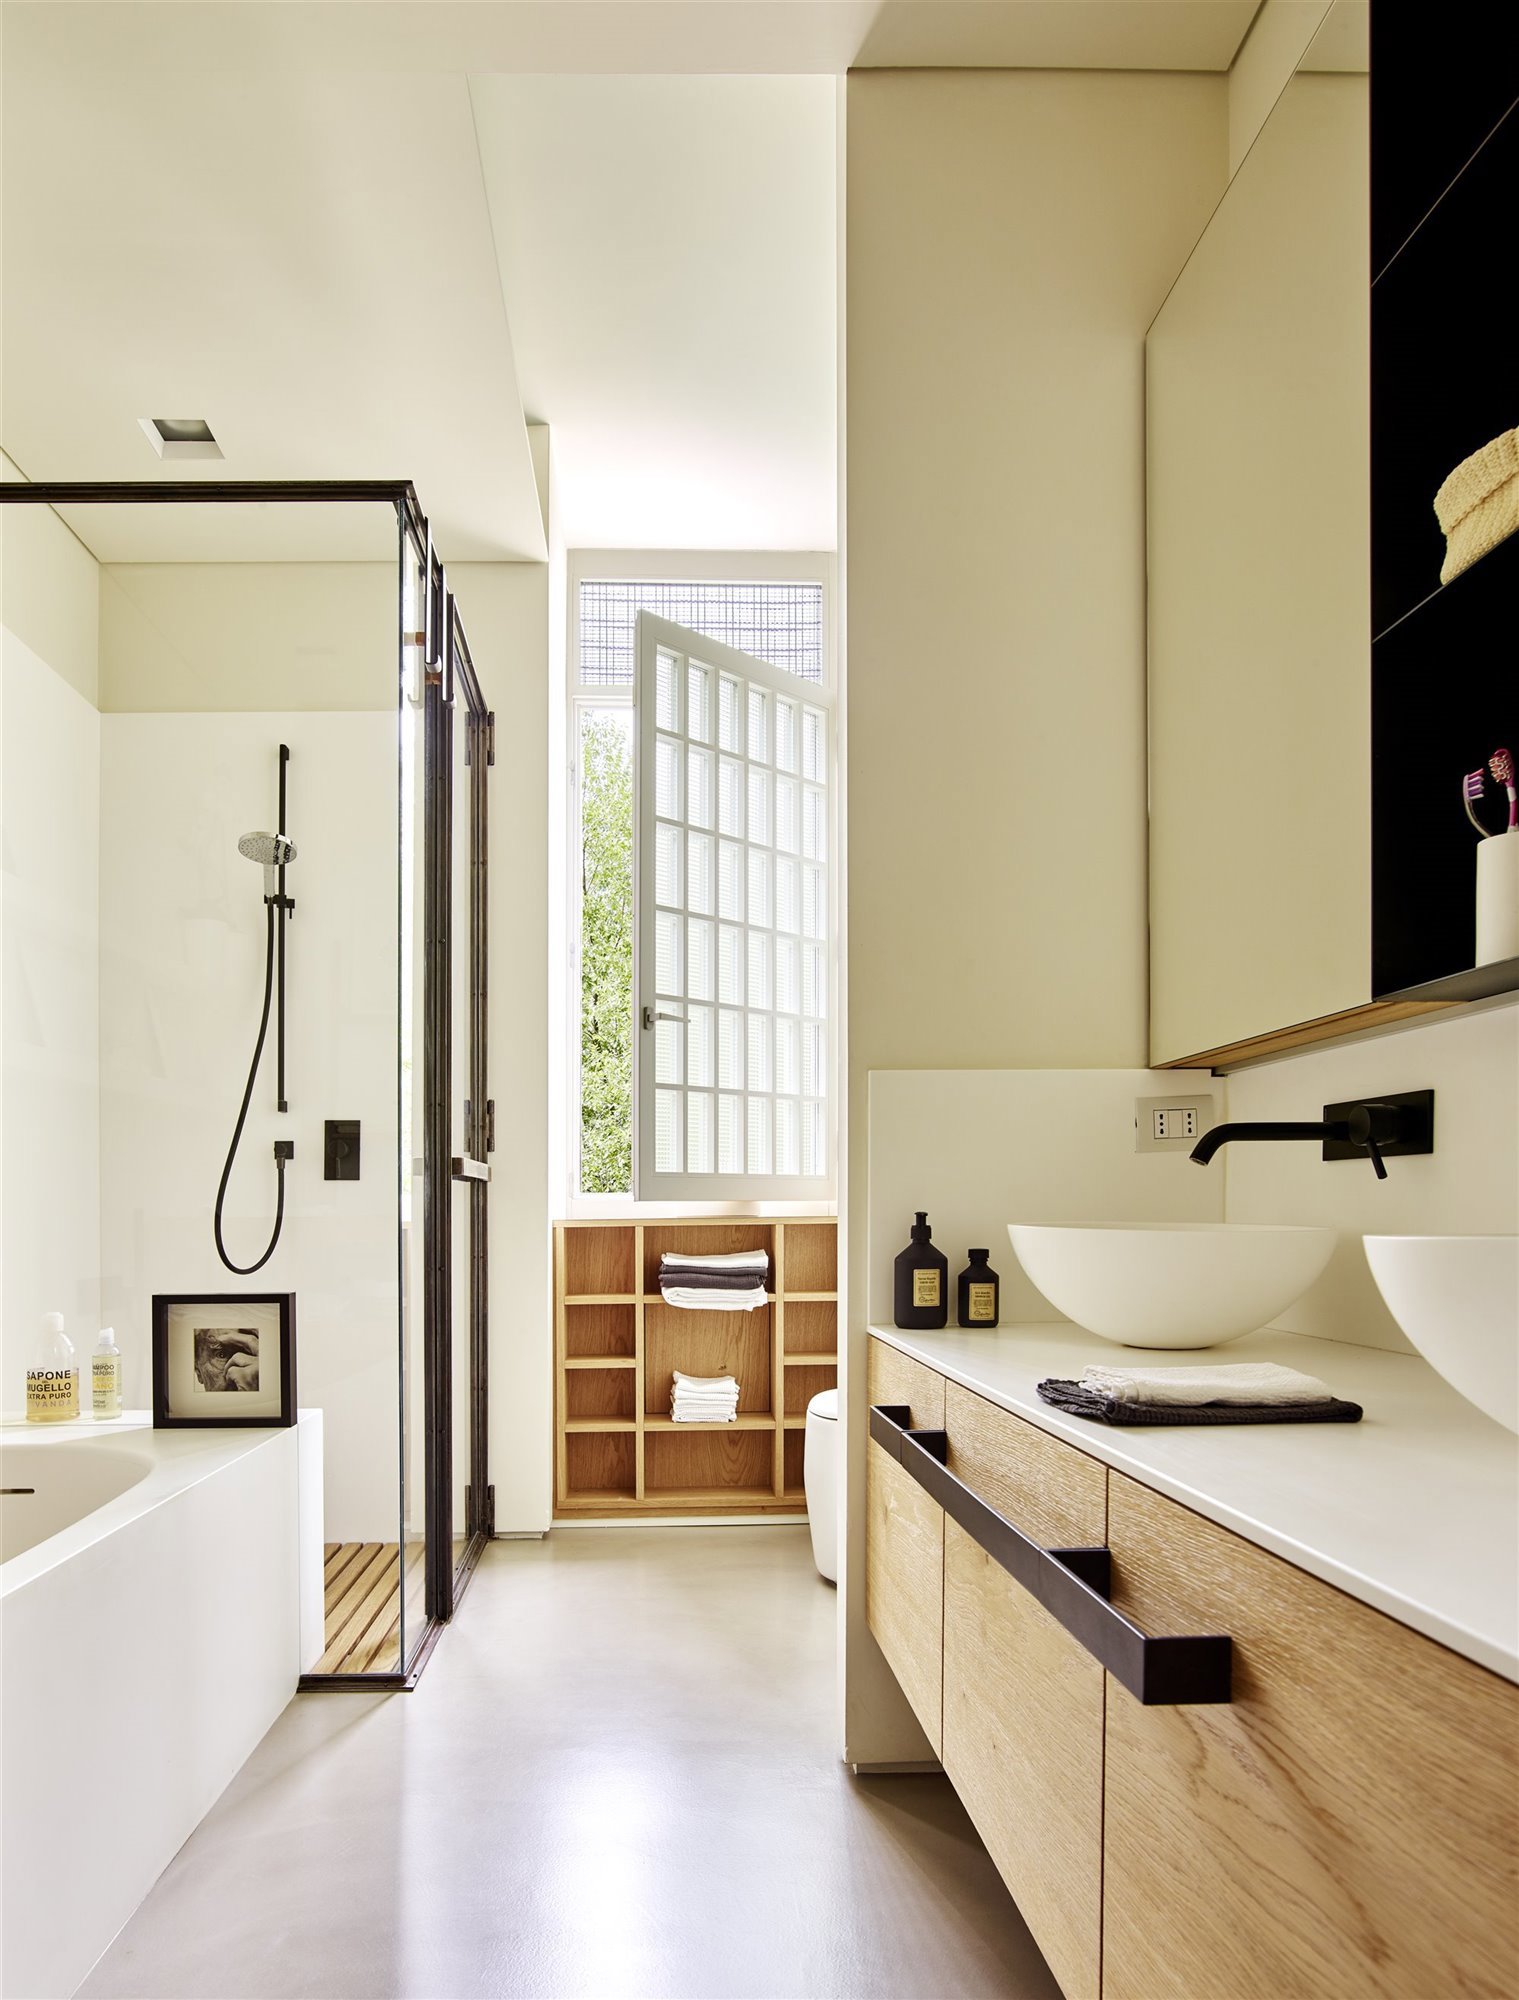 baño moderno en tonos blancos con ducha con revestimientos metálicos 